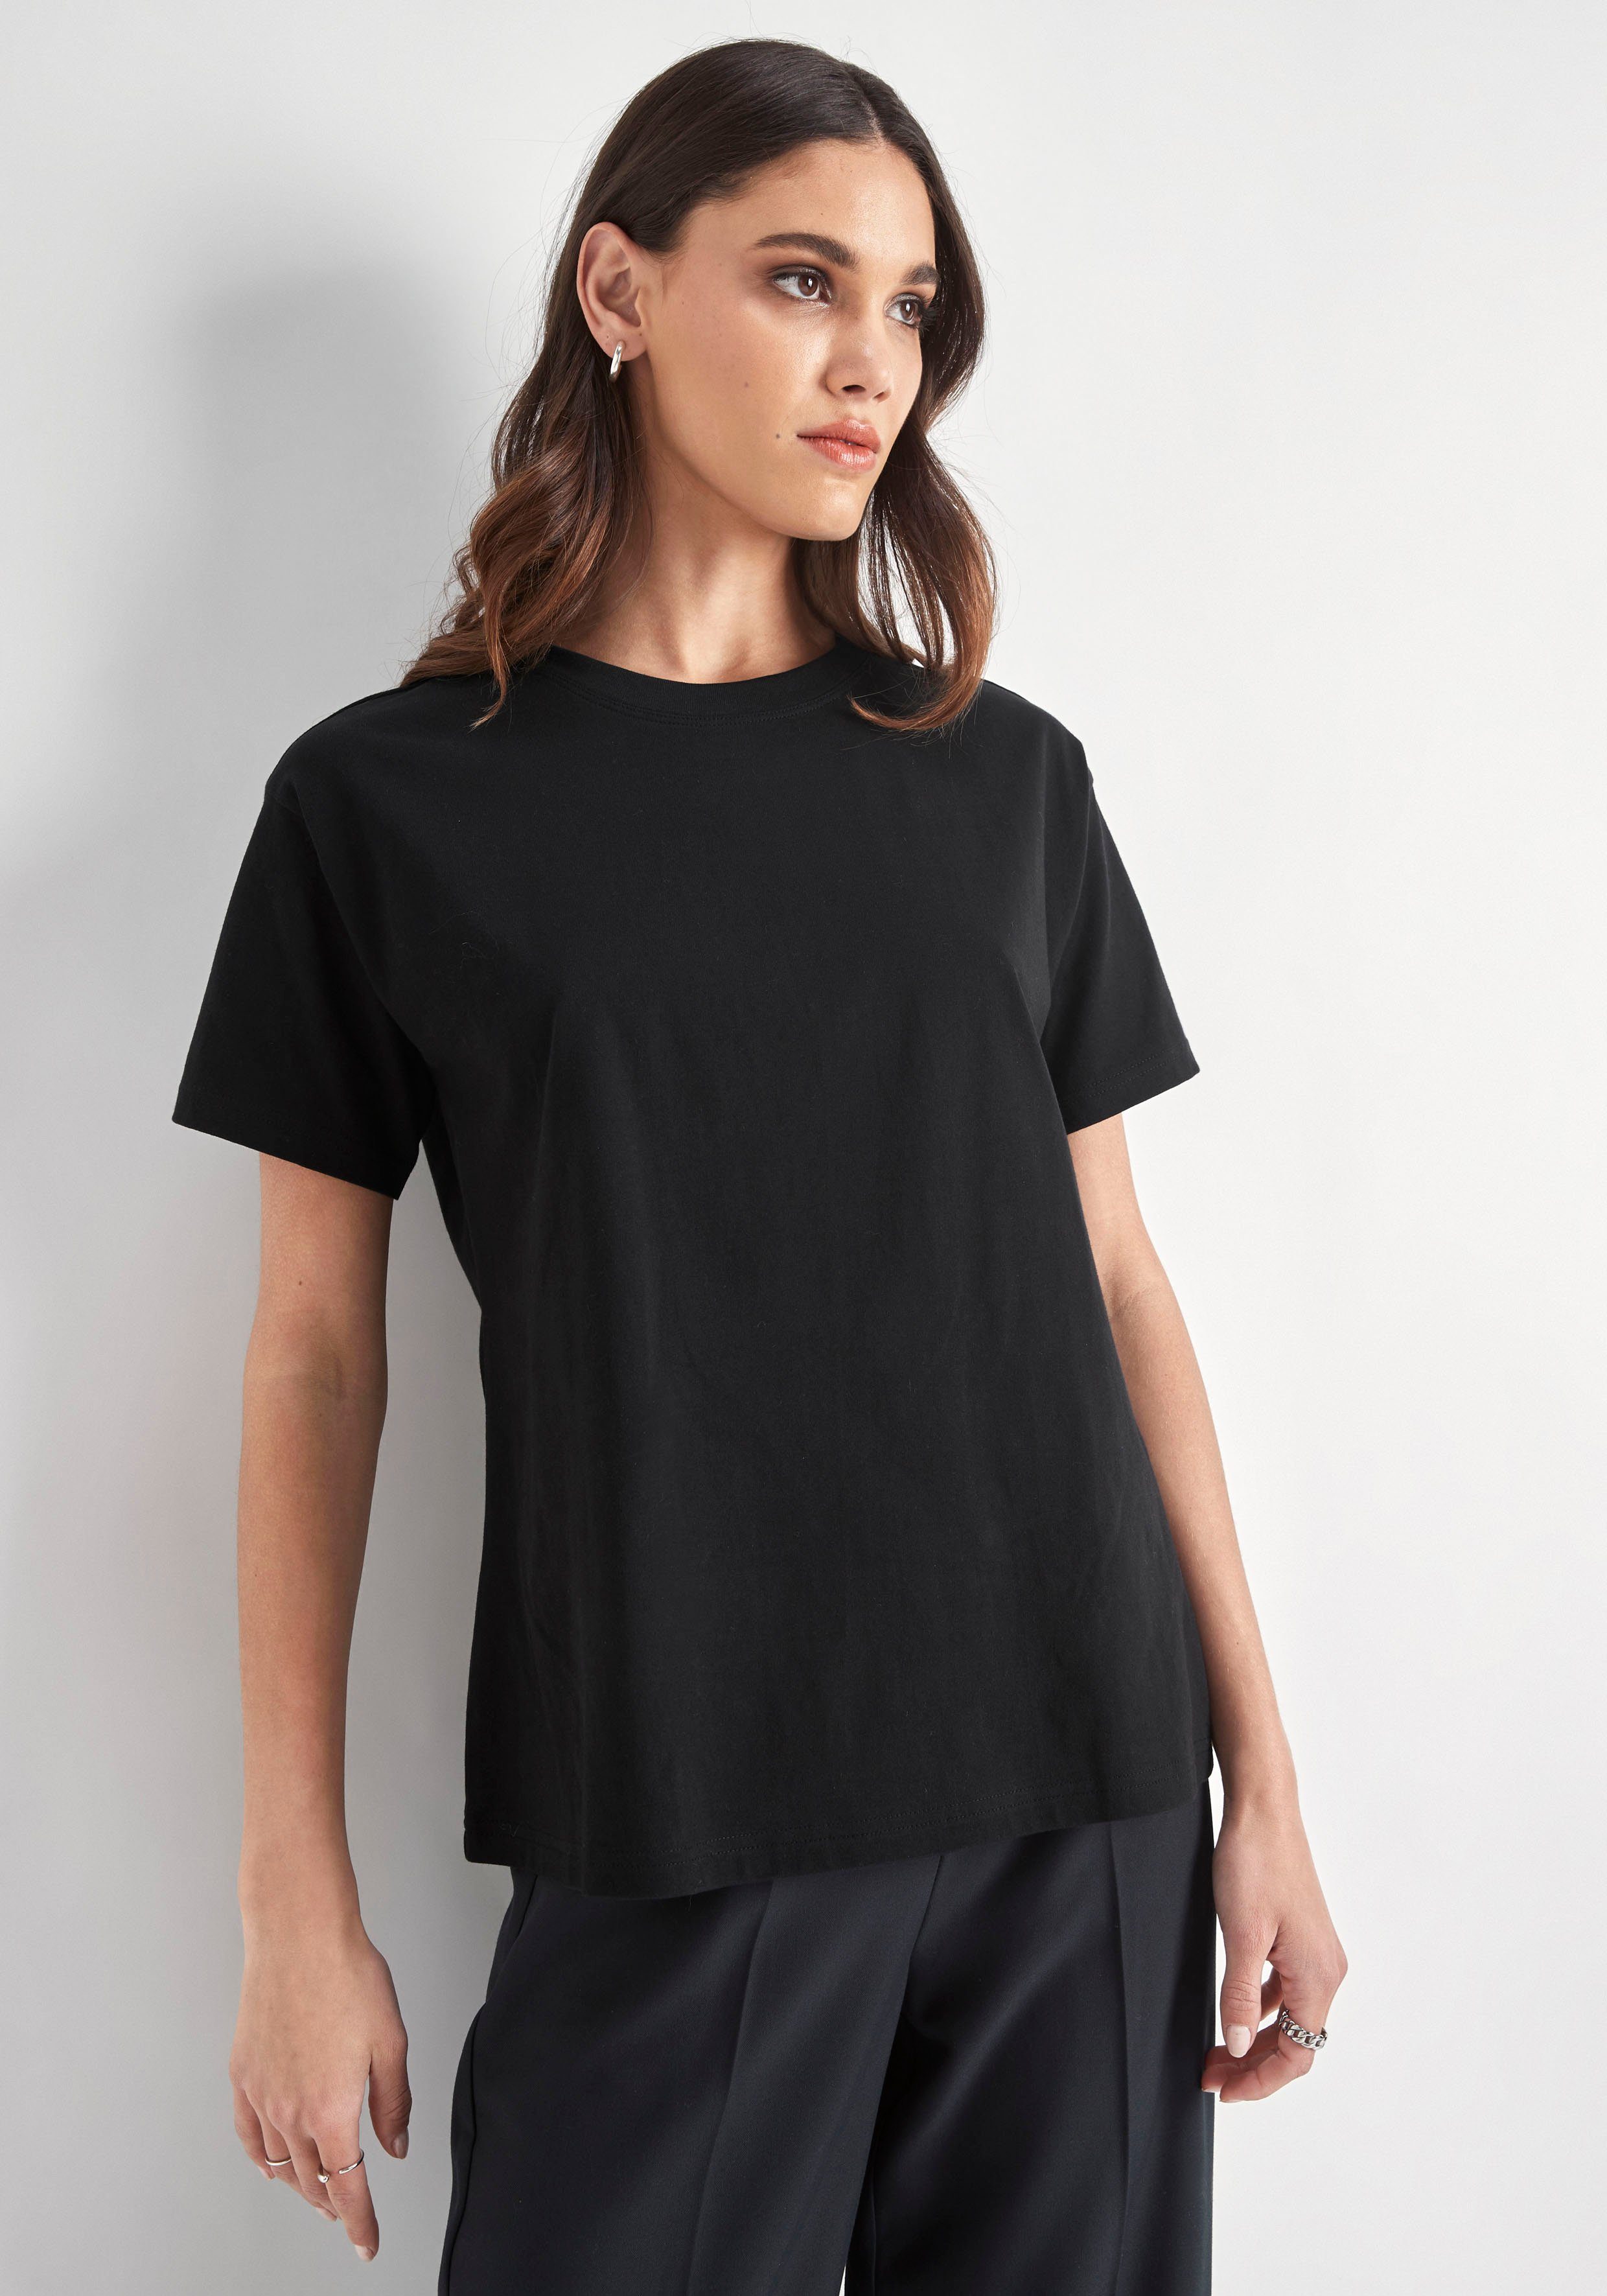 HECHTER PARIS T-Shirt Rundhalsausschnitt mit schwarz